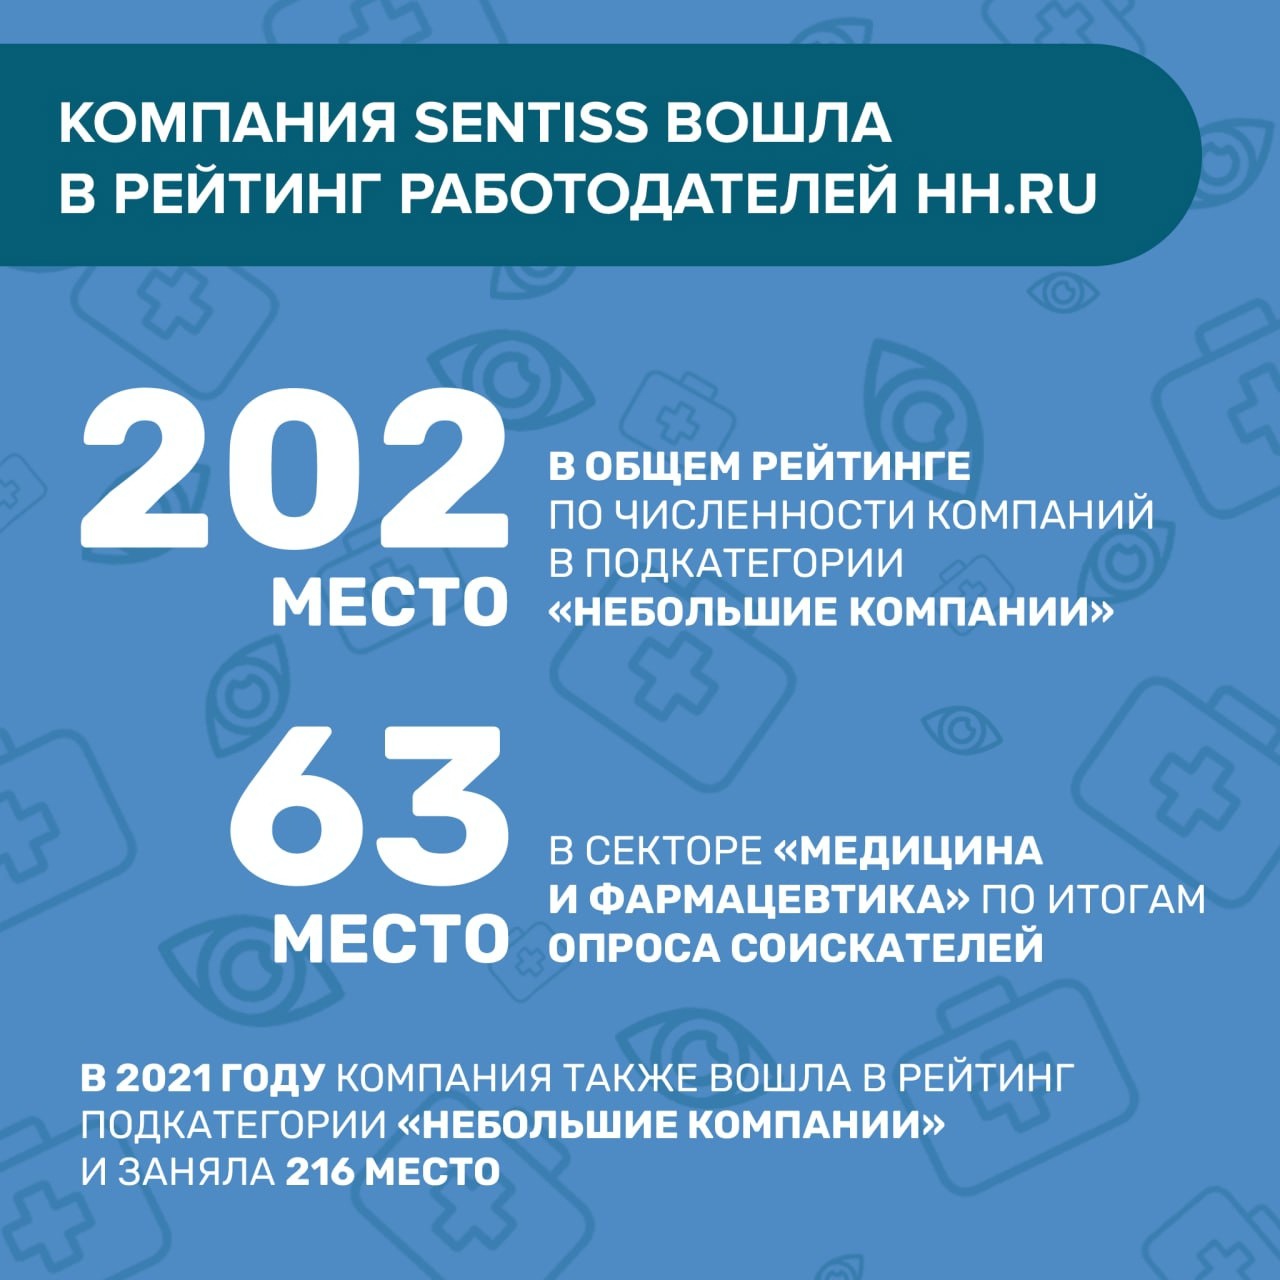 Компания Sentiss традиционно вошла в рейтинг работодателей HH.ru в 2022 году